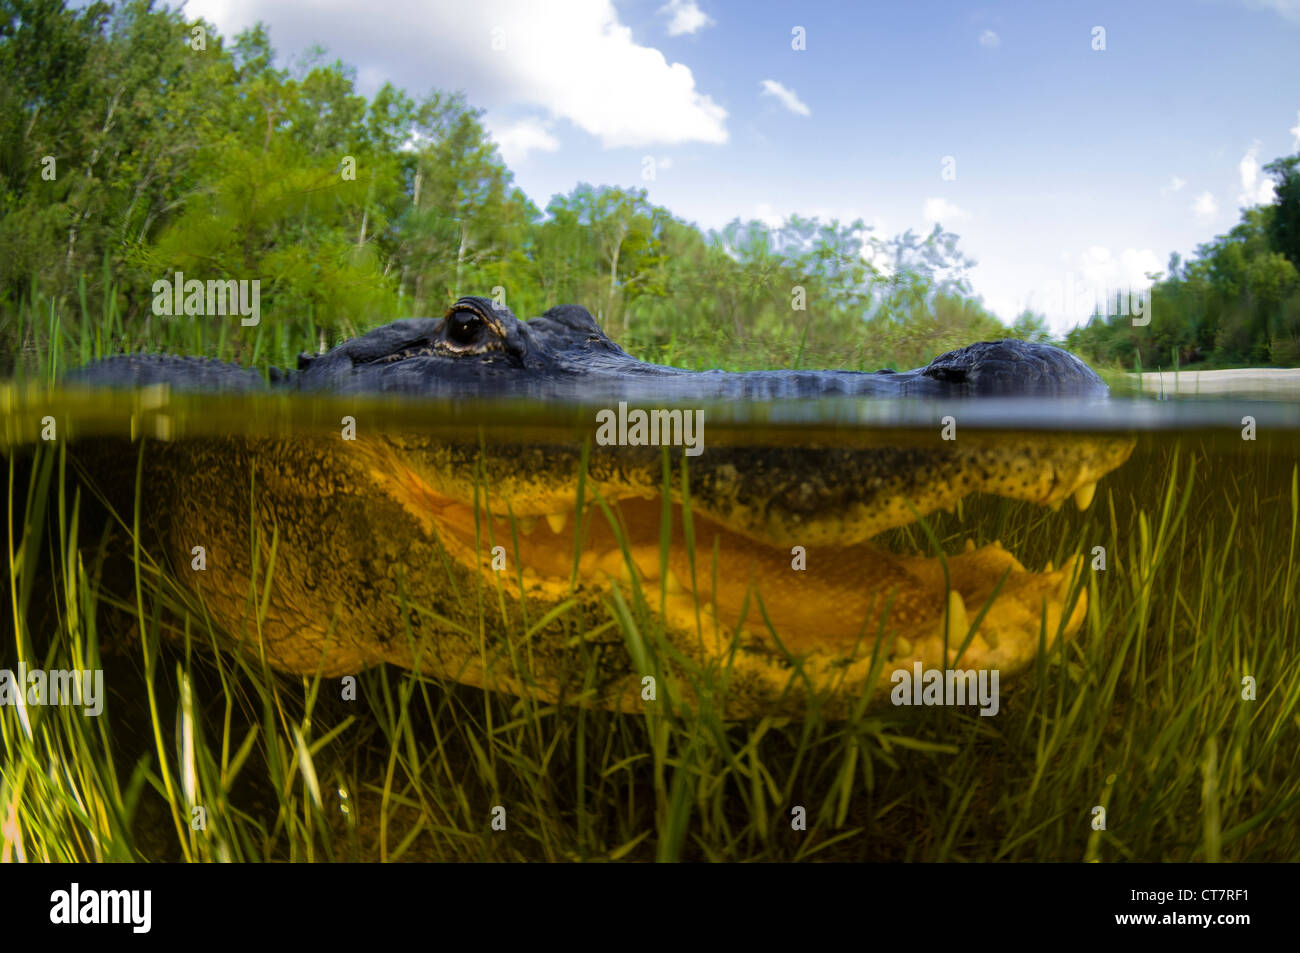 American Alligator Alligator mississipiensis, Split sopra e sotto l'acqua shot, Everglades della Florida Foto Stock